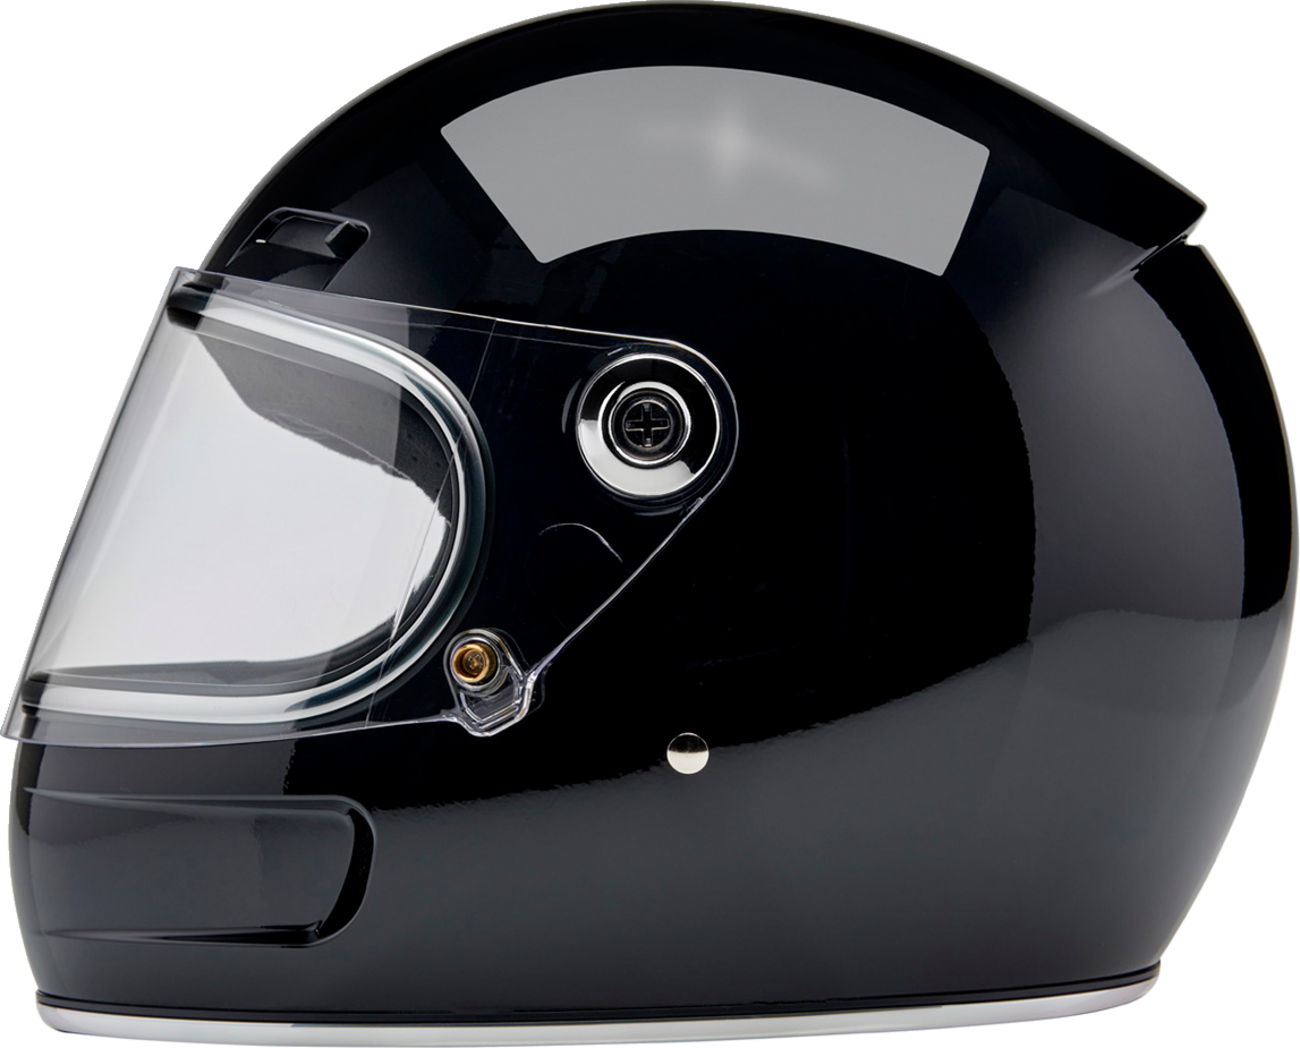 BILTWELL Gringo SV Helmet - Gloss Black - Large 1006-101-504